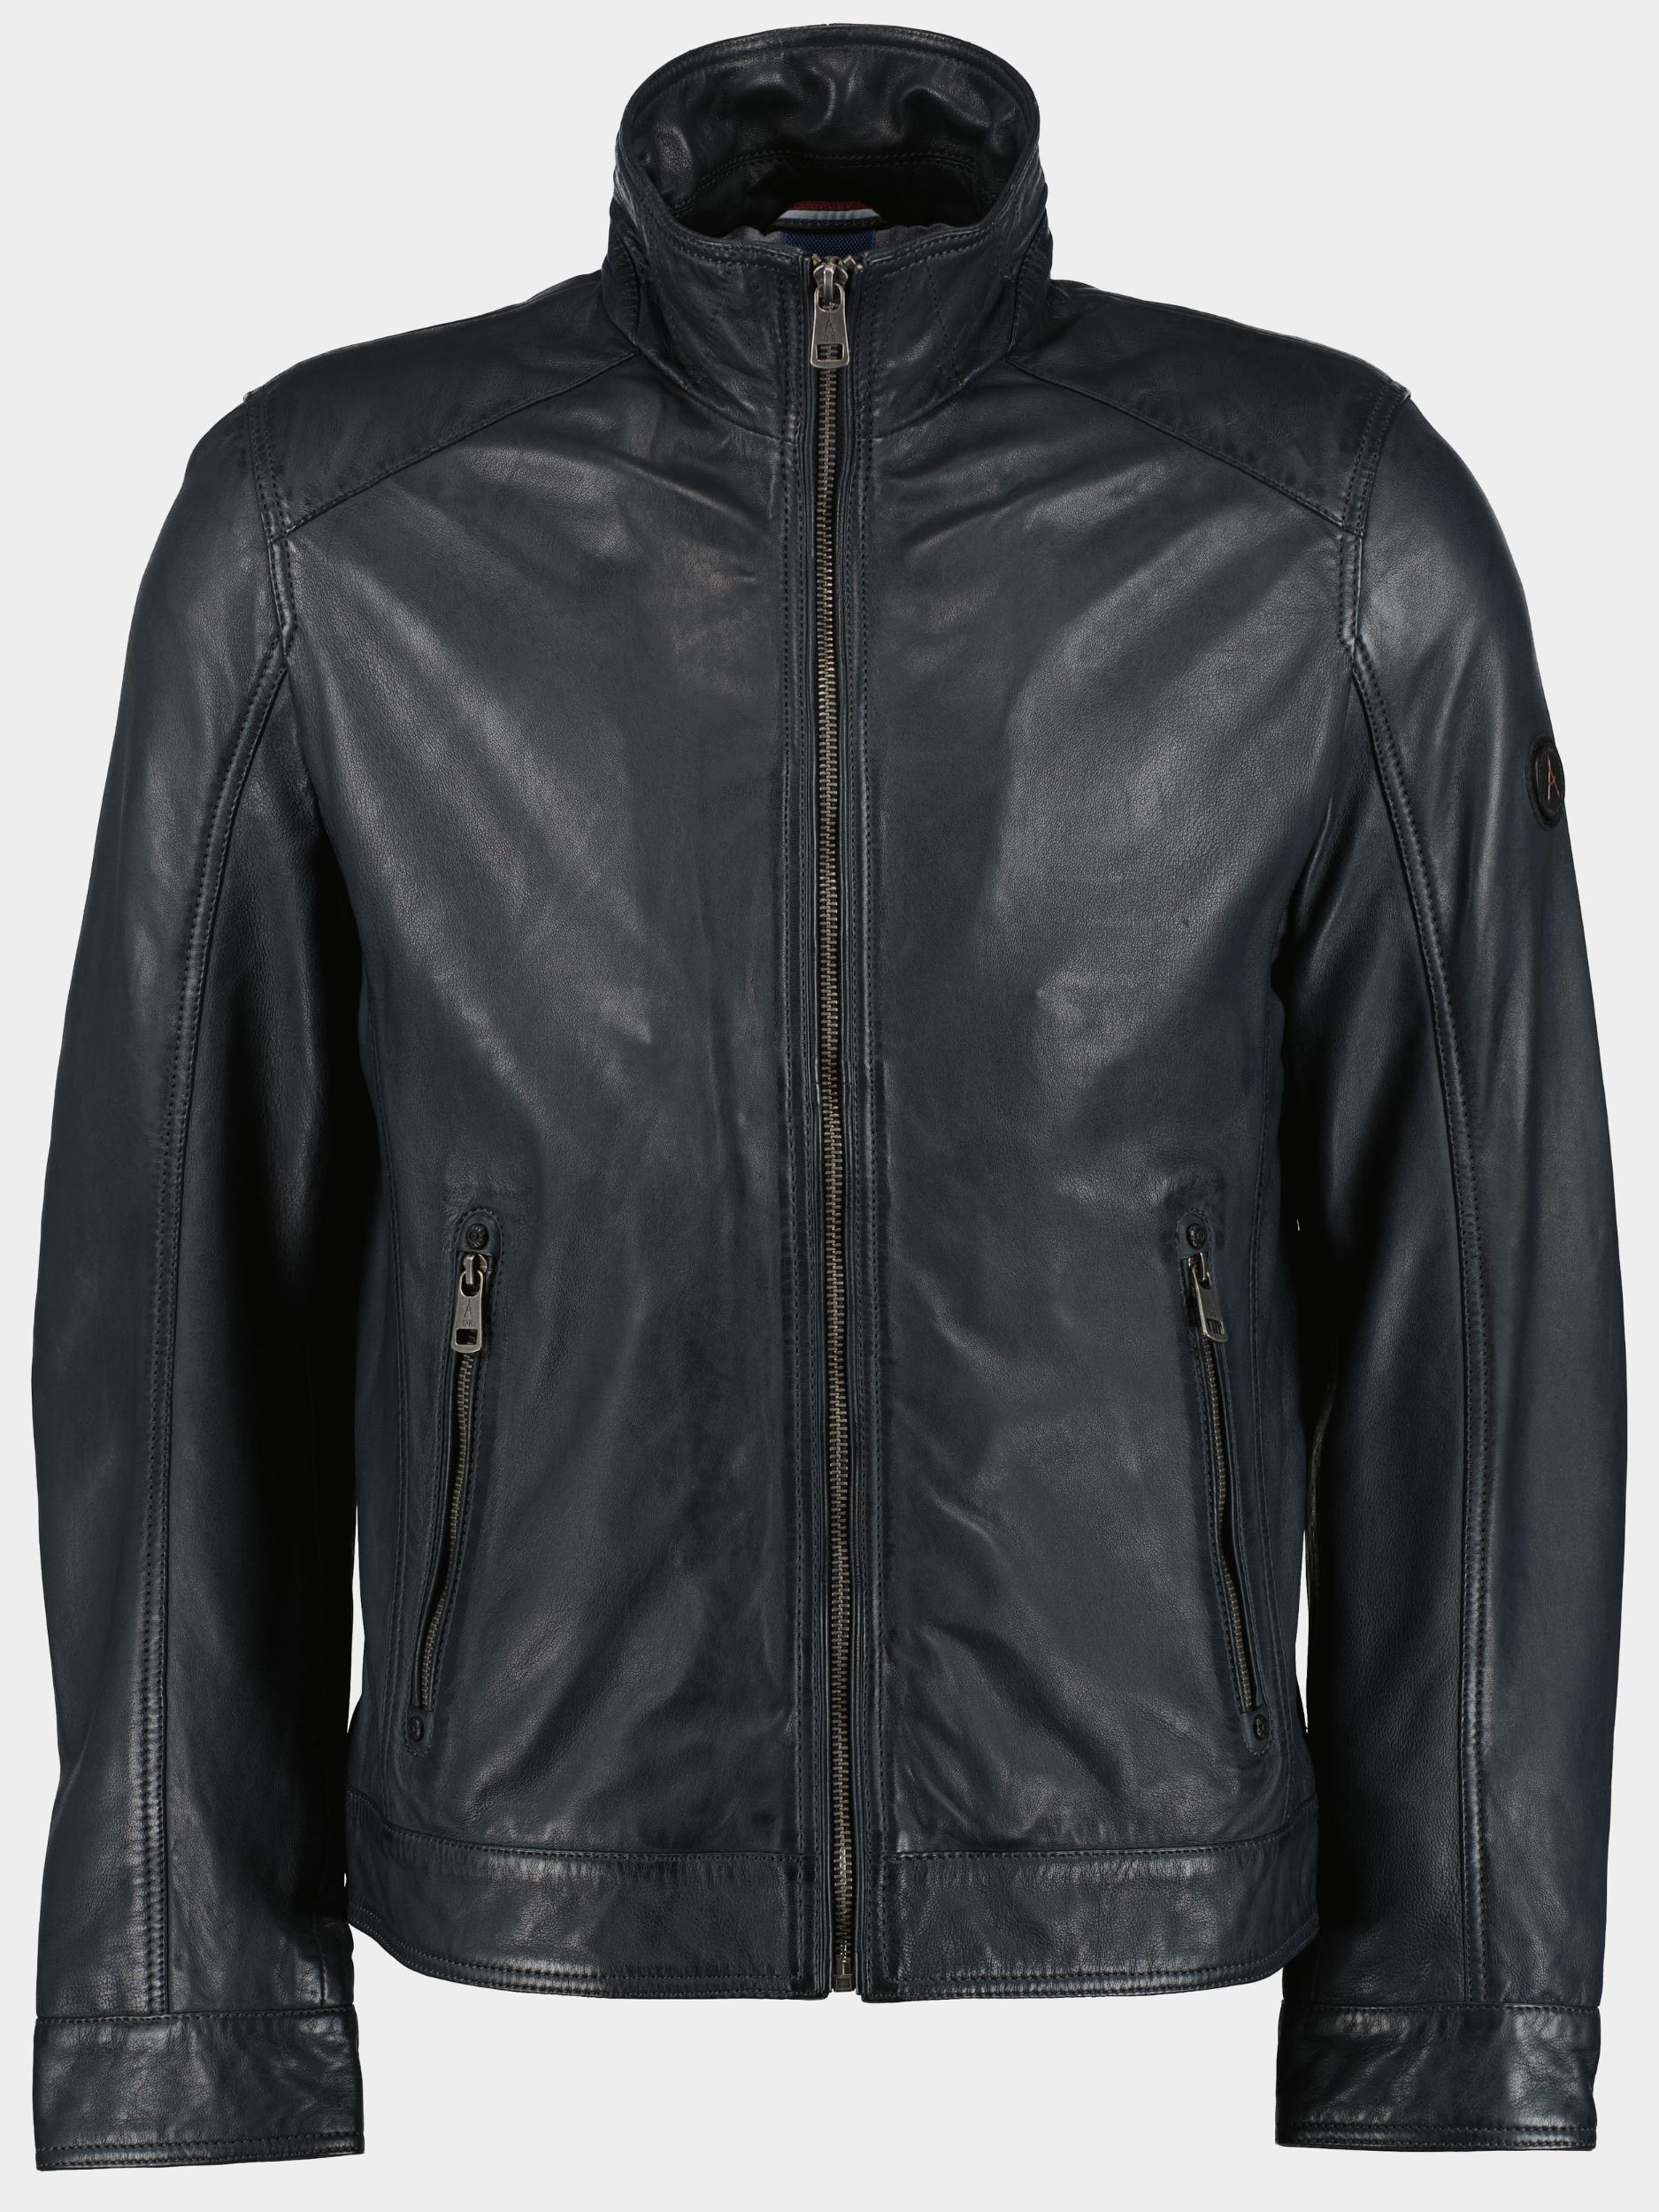 Donders 1860 Lederen jack Blauw Leather Jacktes 52468/799